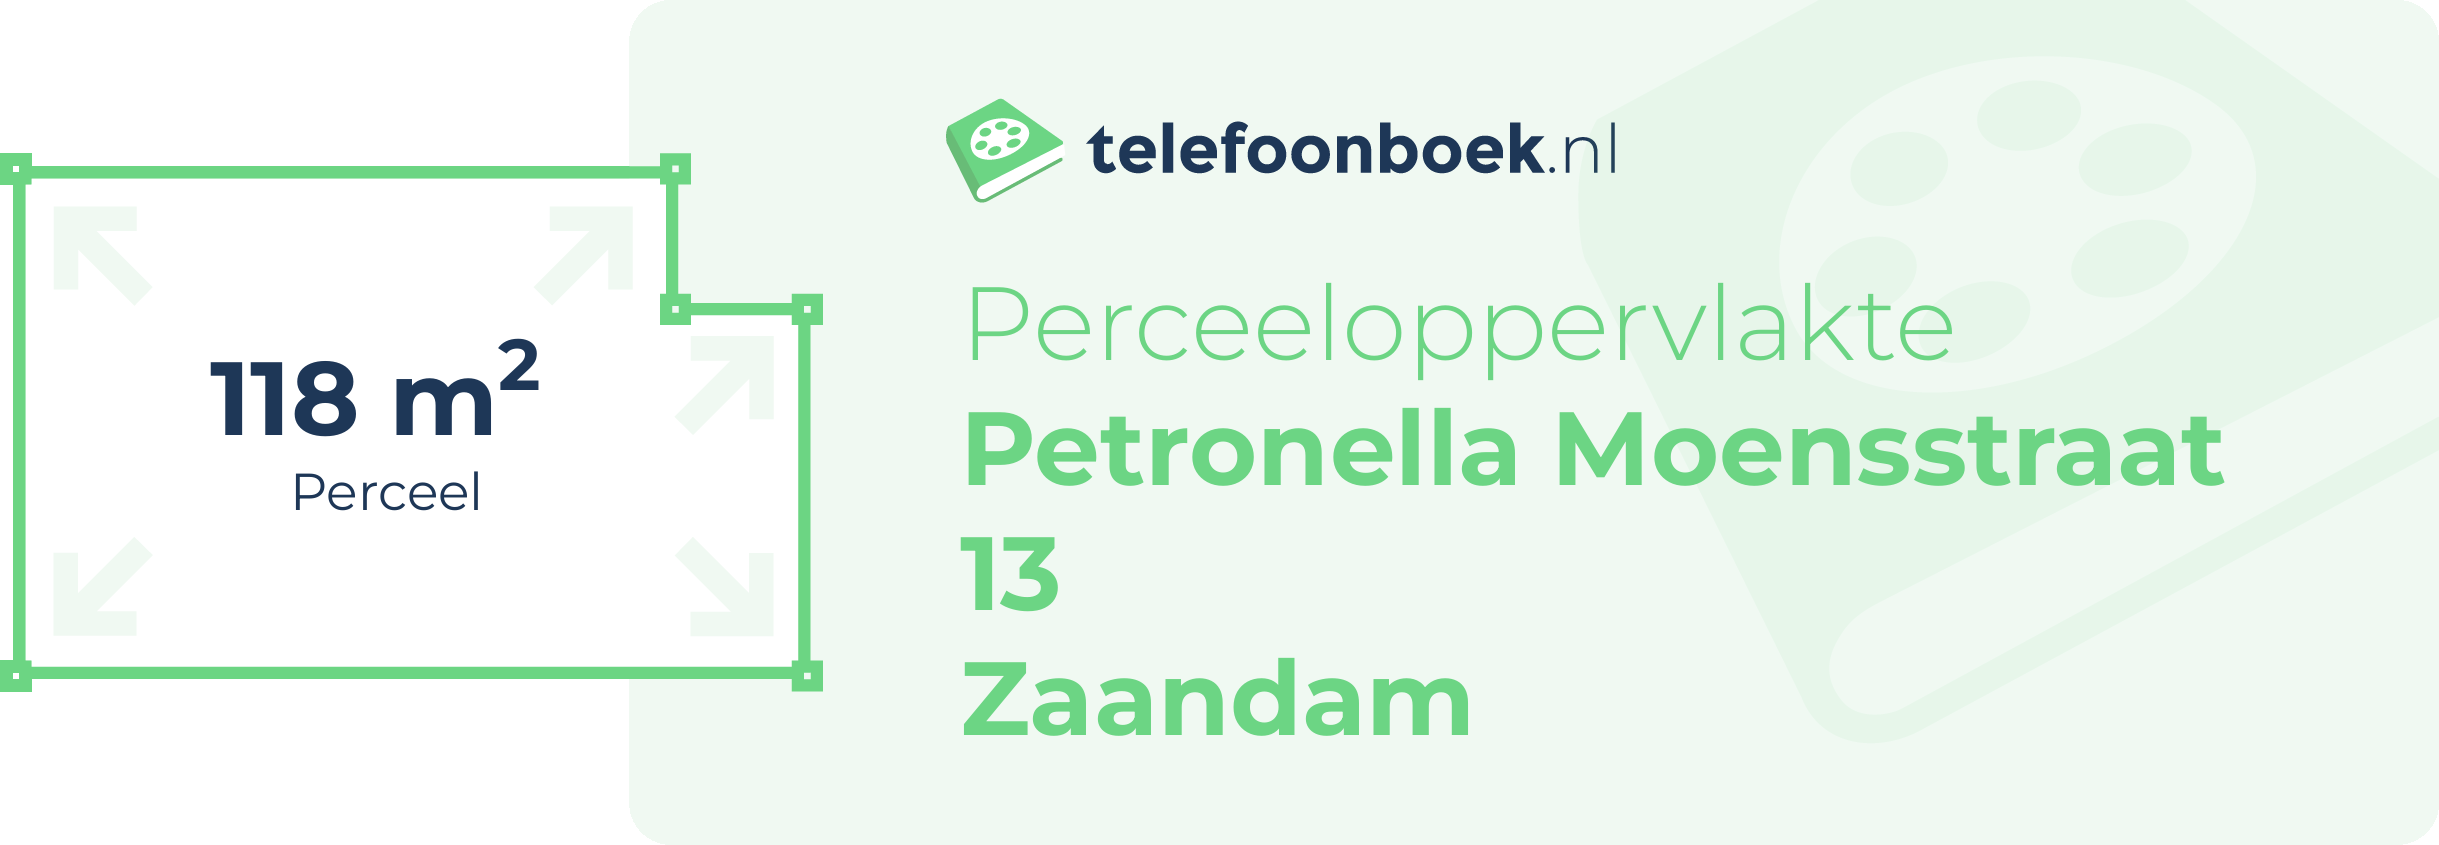 Perceeloppervlakte Petronella Moensstraat 13 Zaandam